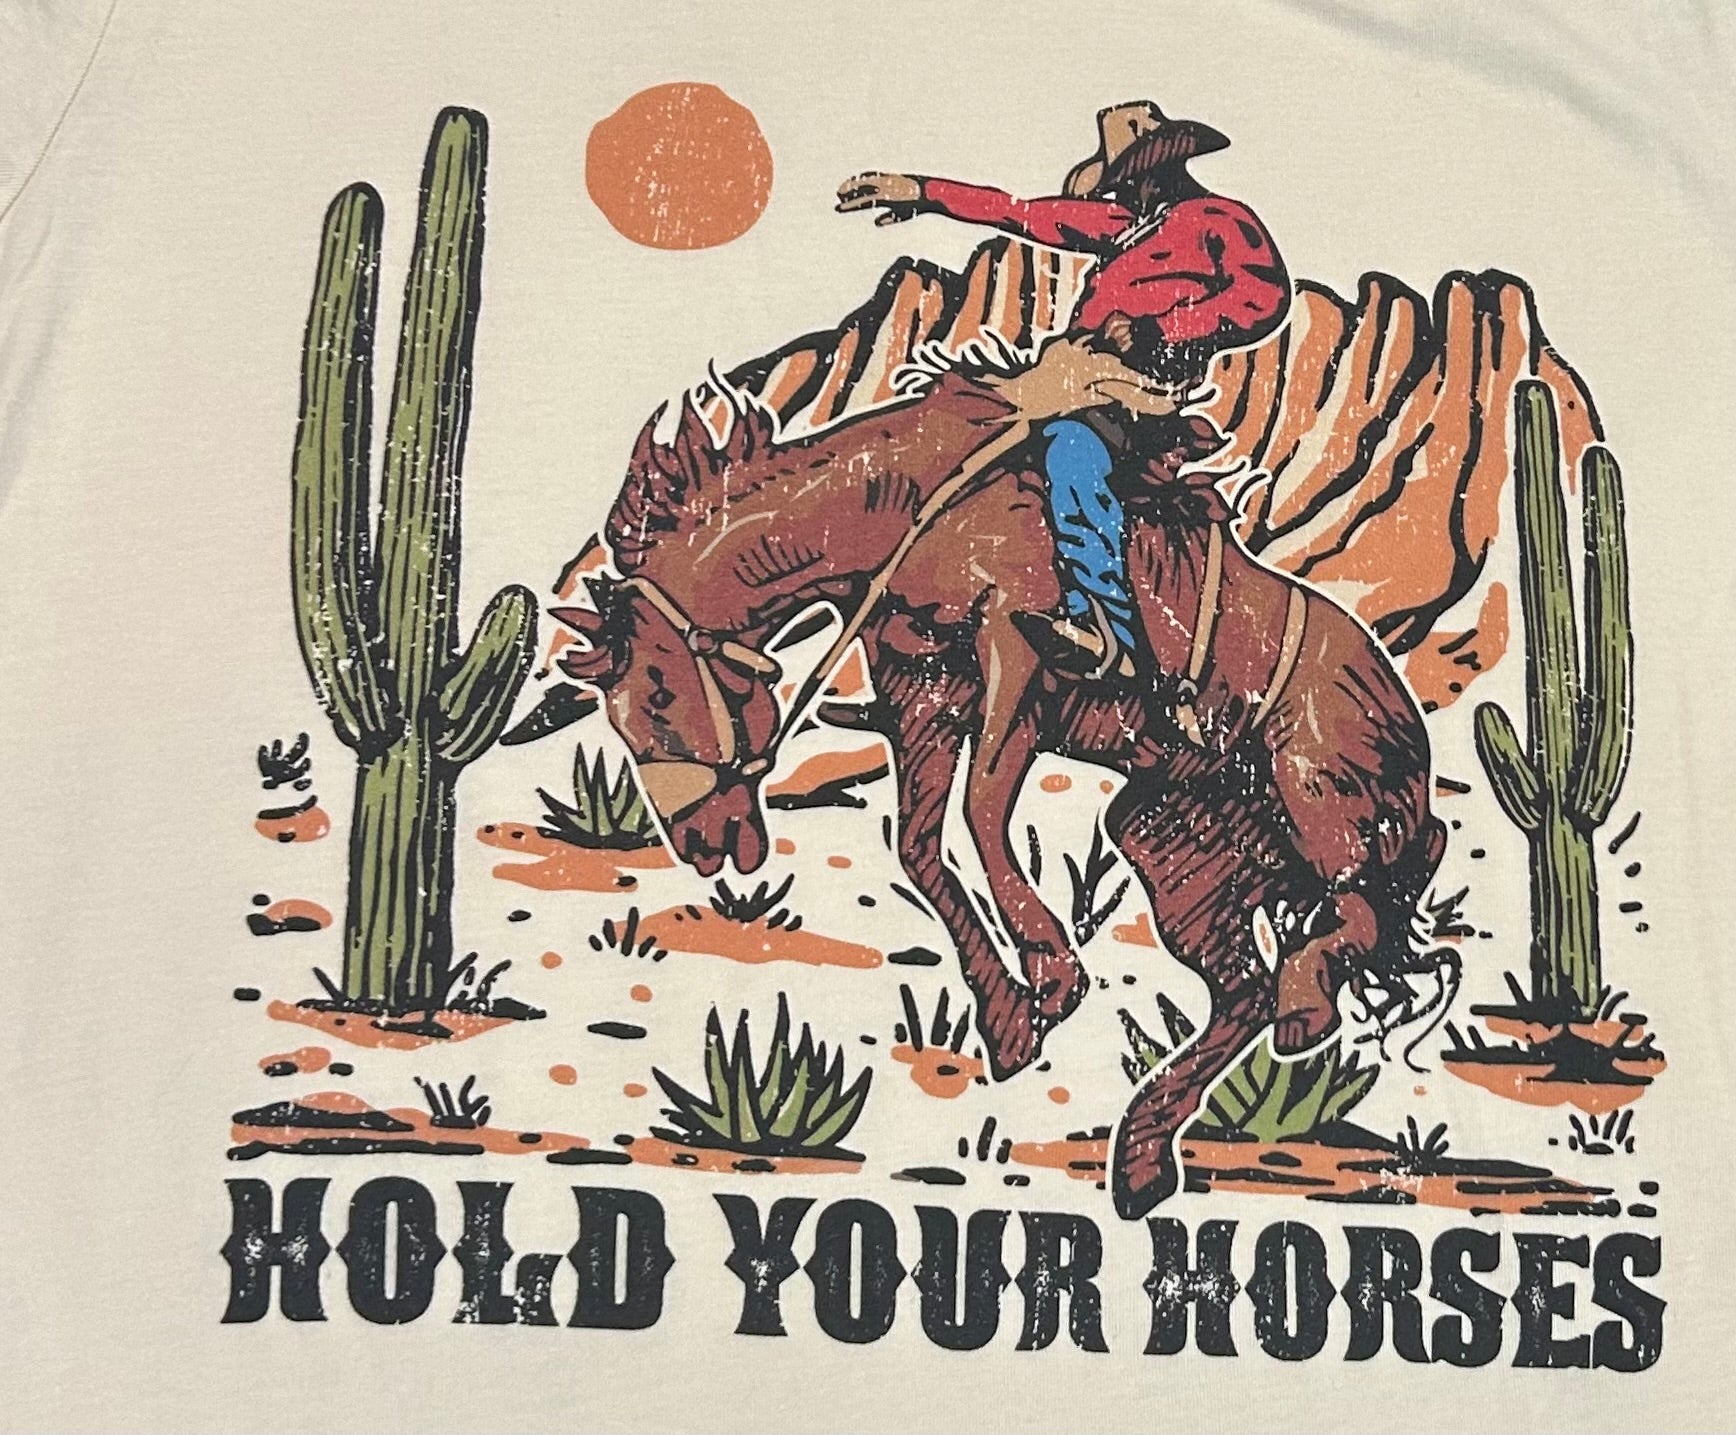 Women’s Ivory Desert hold your horses t-shirt